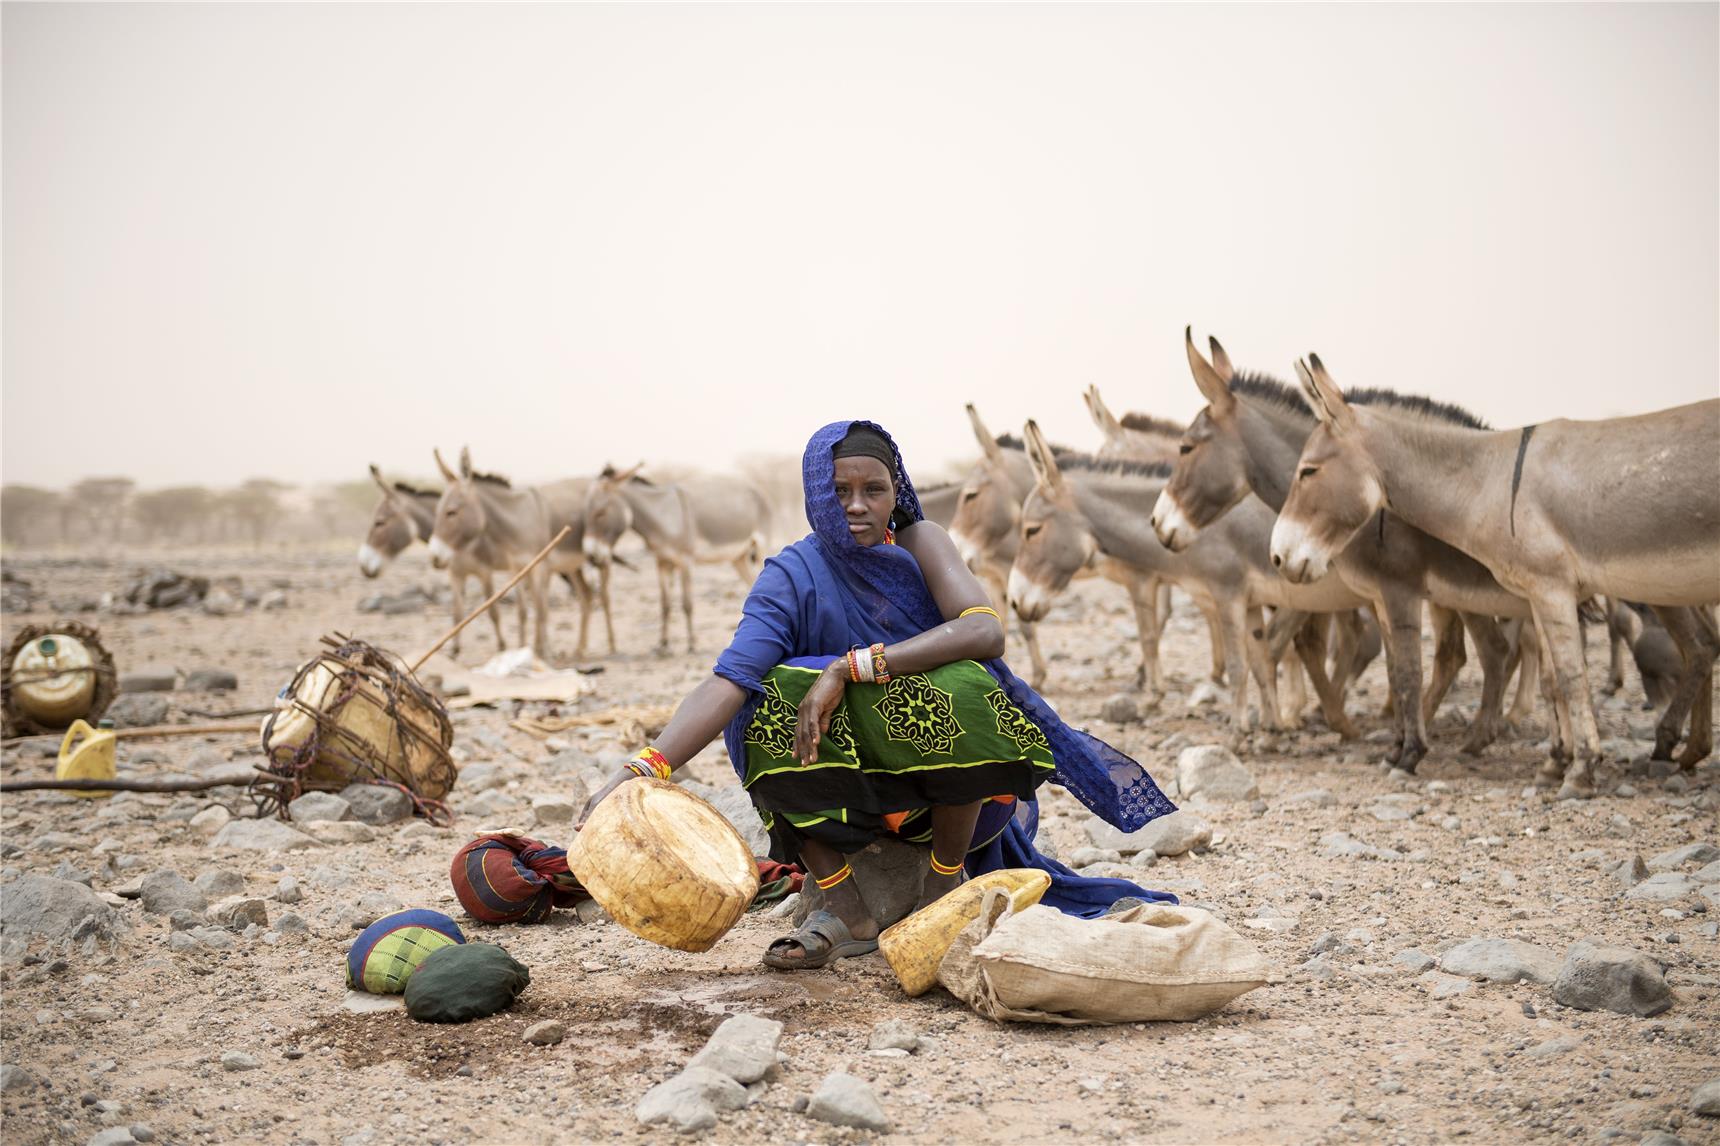 Frau mit Wassergefäßen und Eseln in staubiger Region